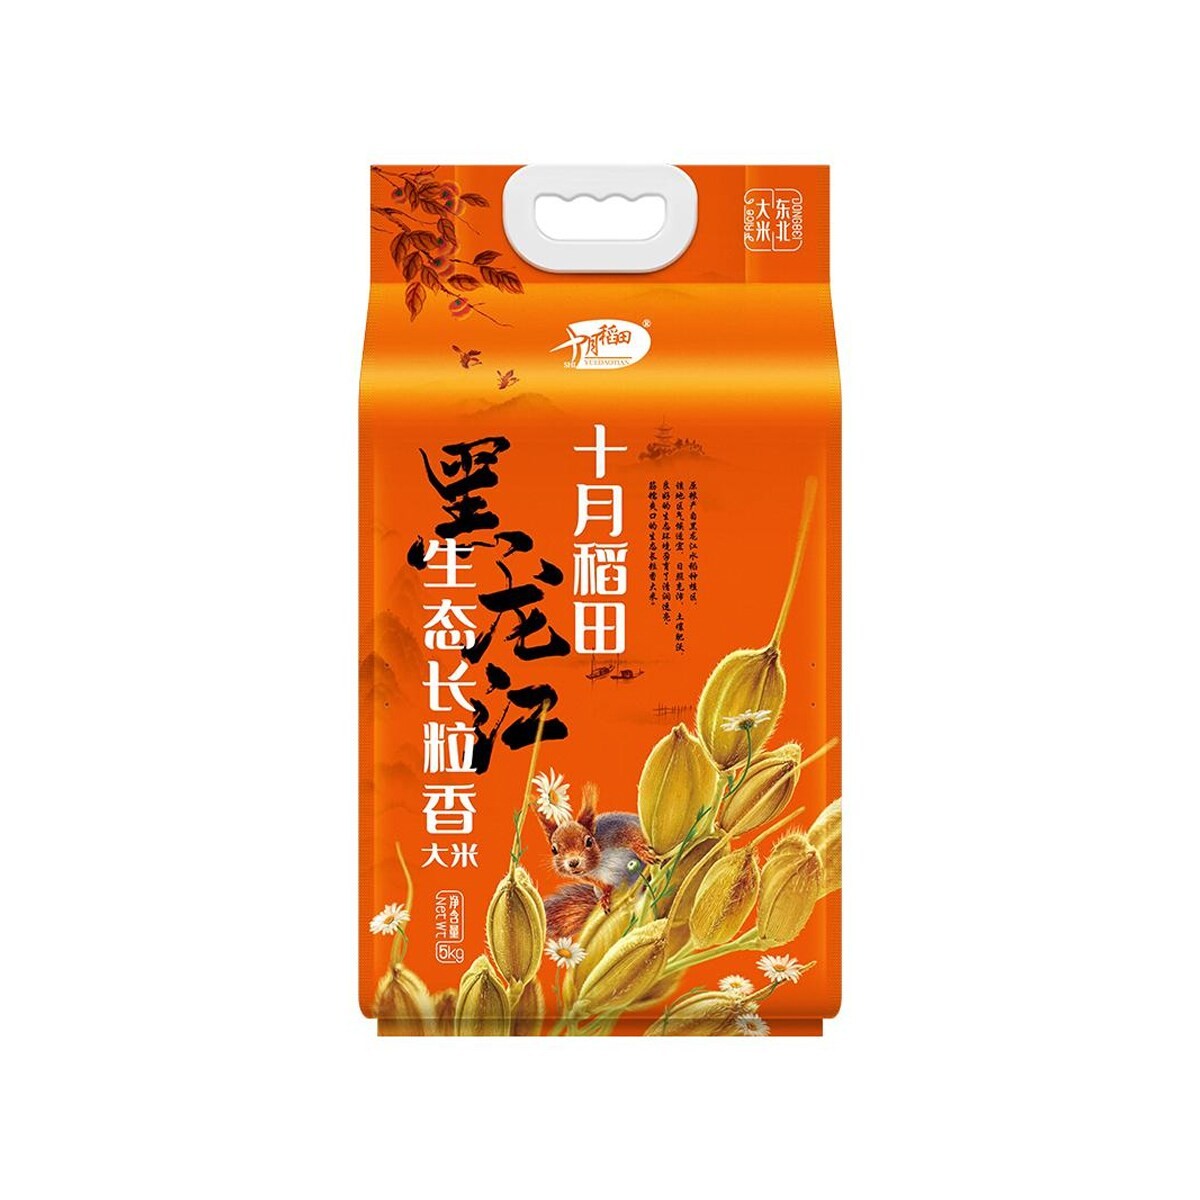 shi-yue-dao-xiang-rice